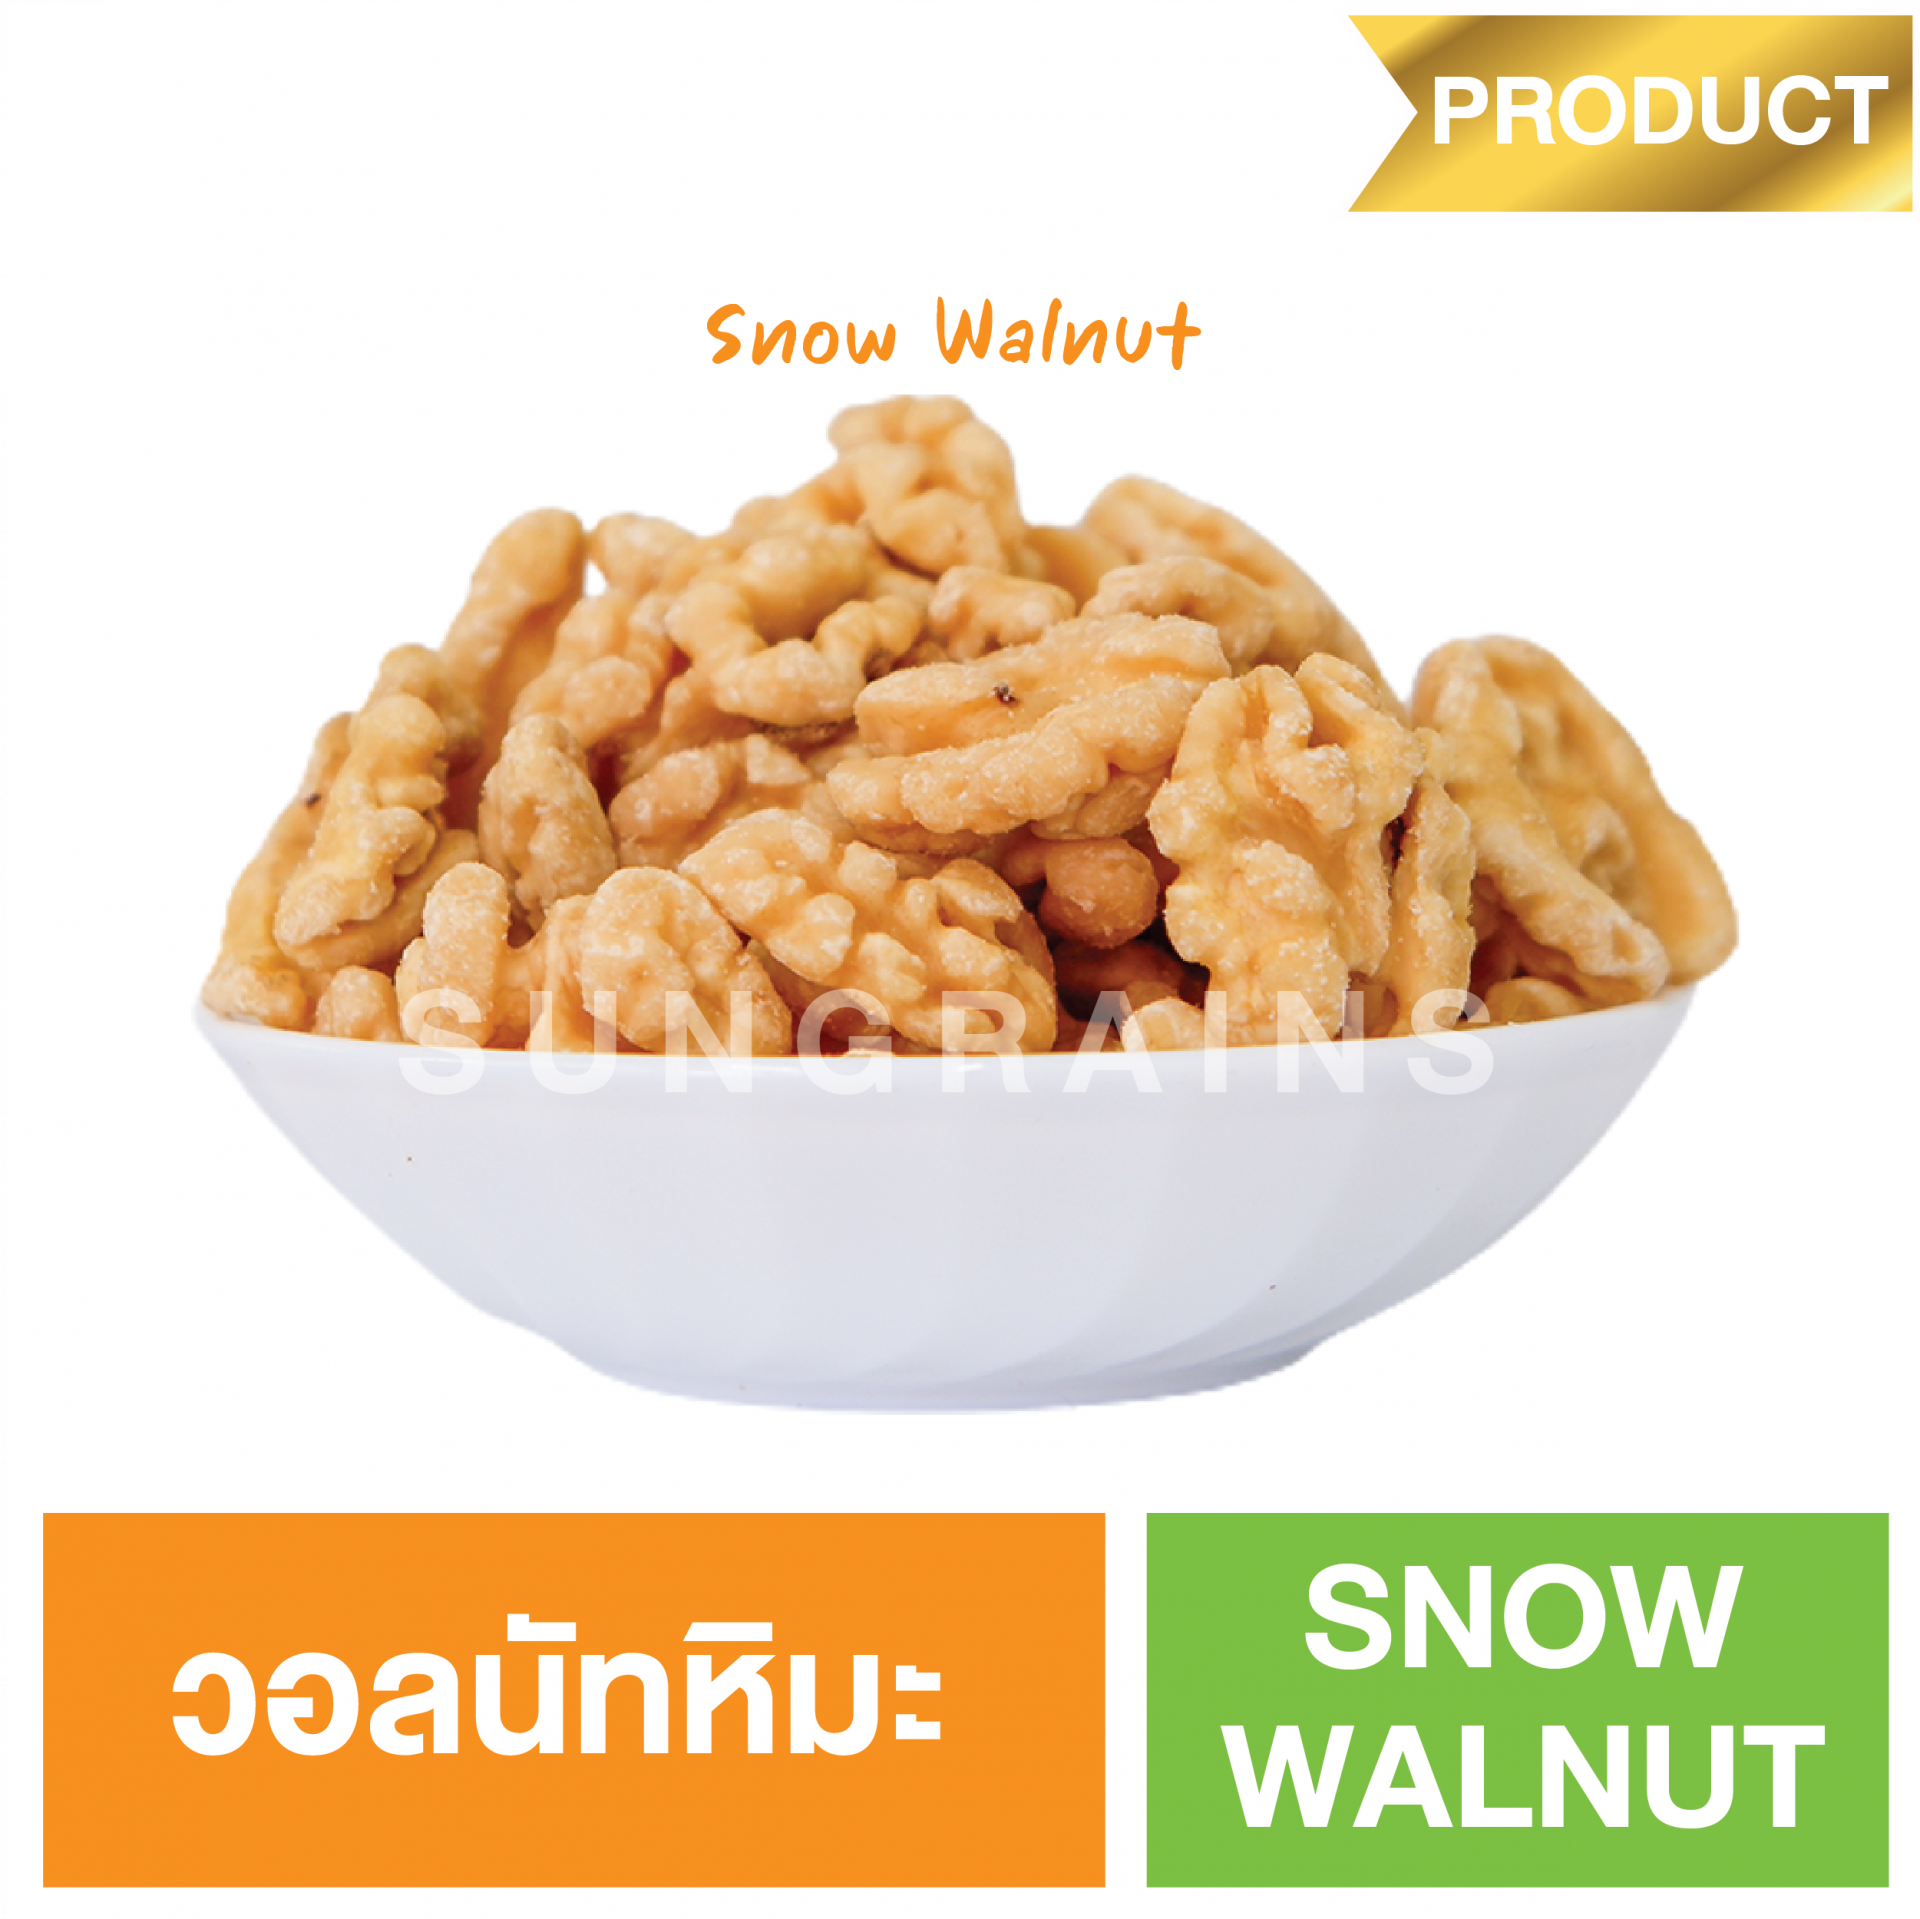 Snow Walnut